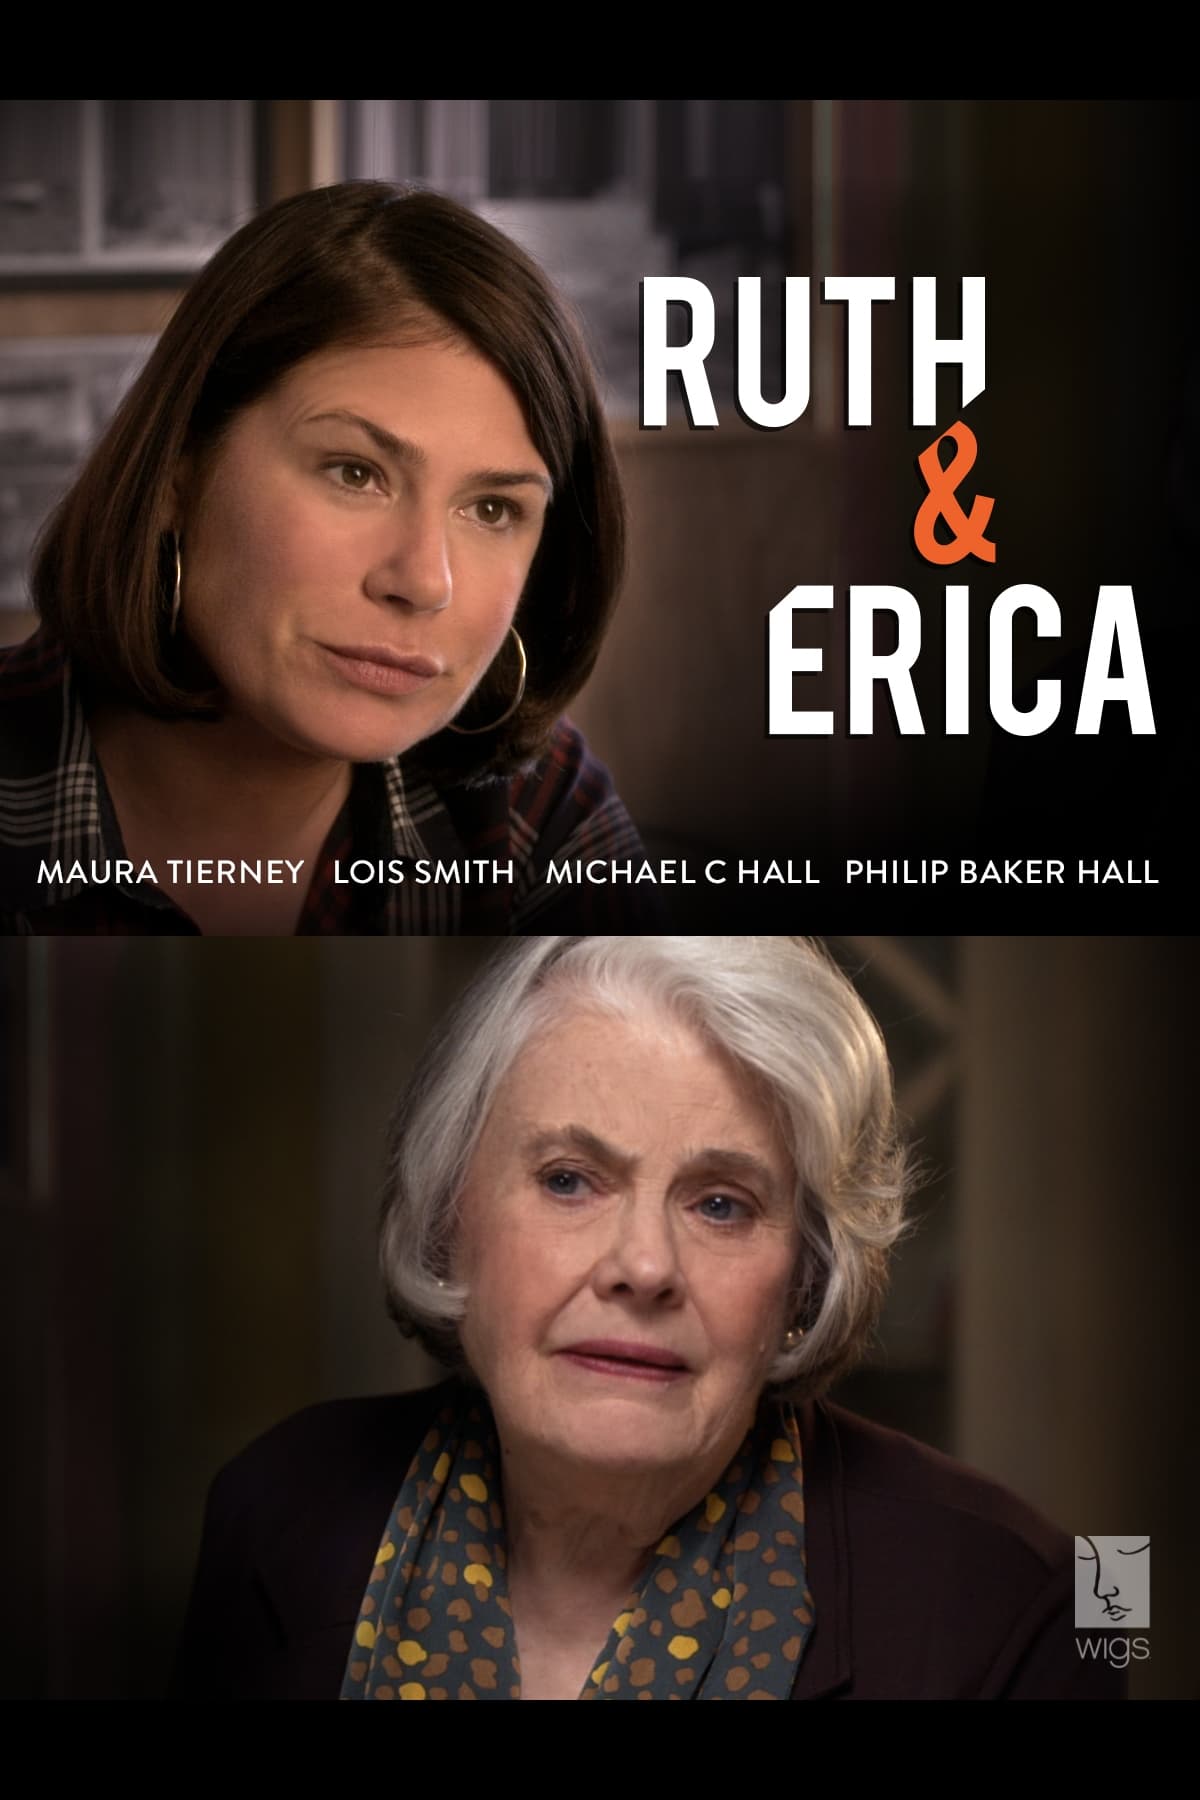 Ruth & Erica